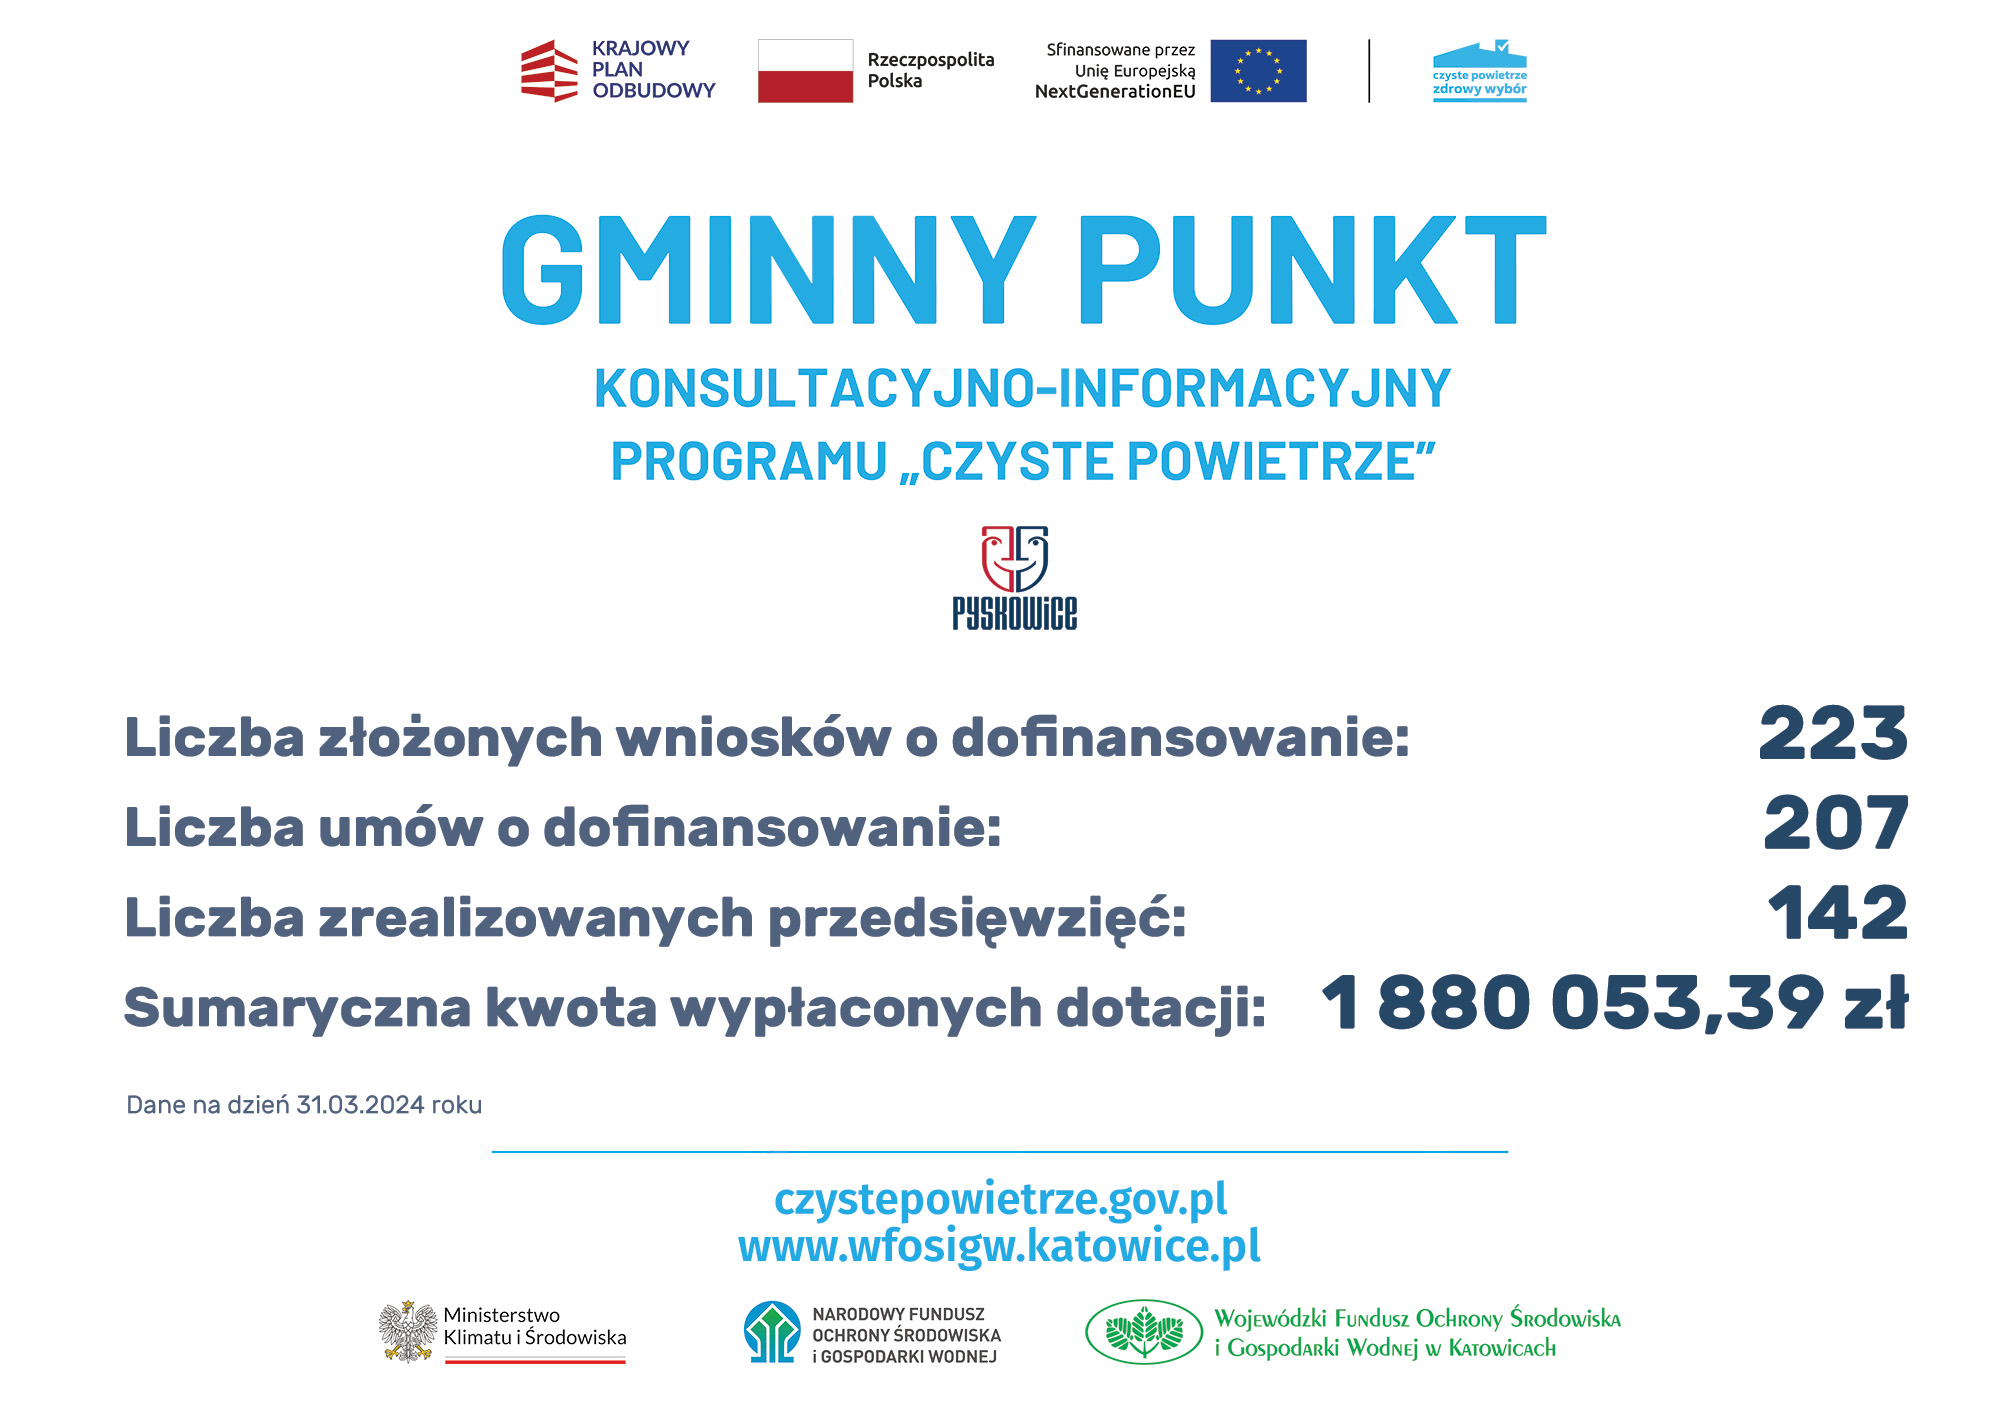 wyniki programu Czyste powietrze w Pyskowicach, dane na 31 grudnia 2023, zbieżne z treścią informacji